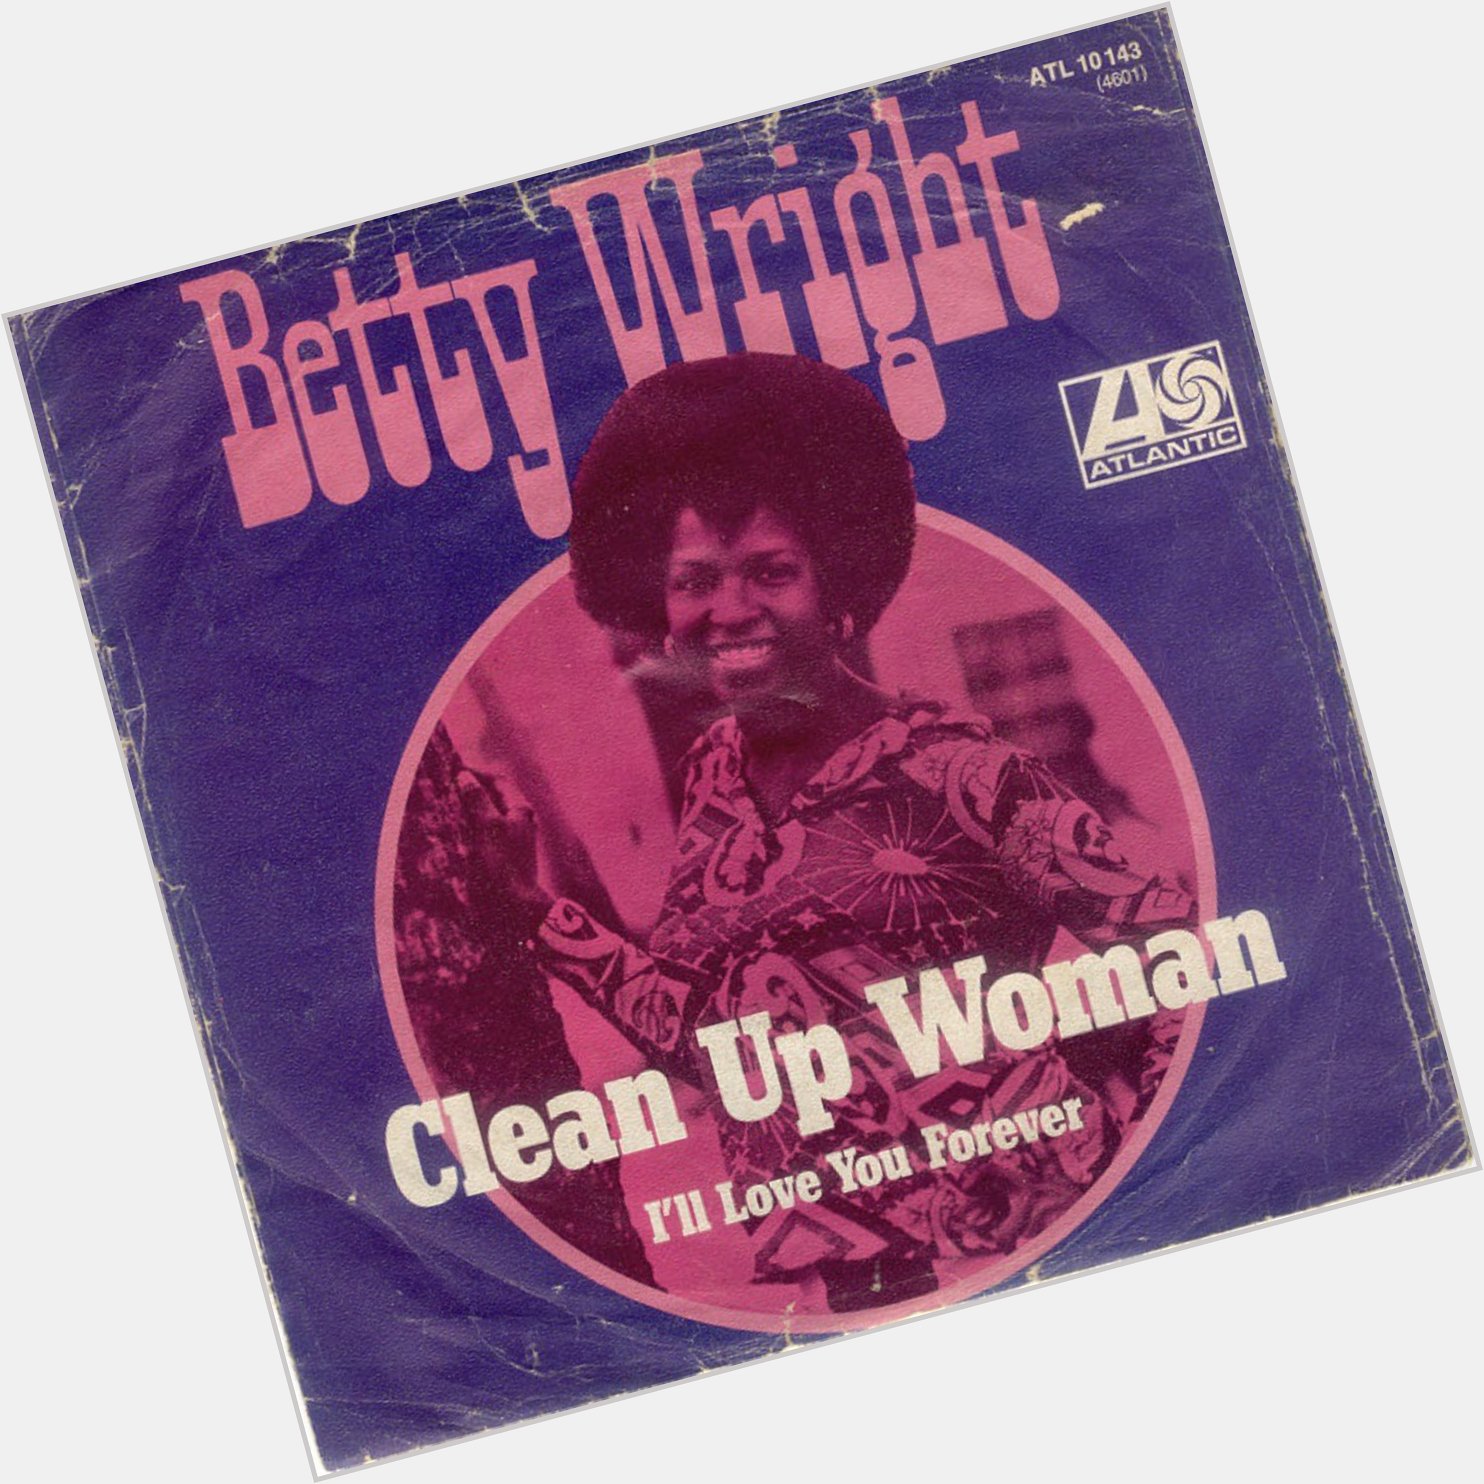  Happy Heavenly Birthday, Betty Wright 